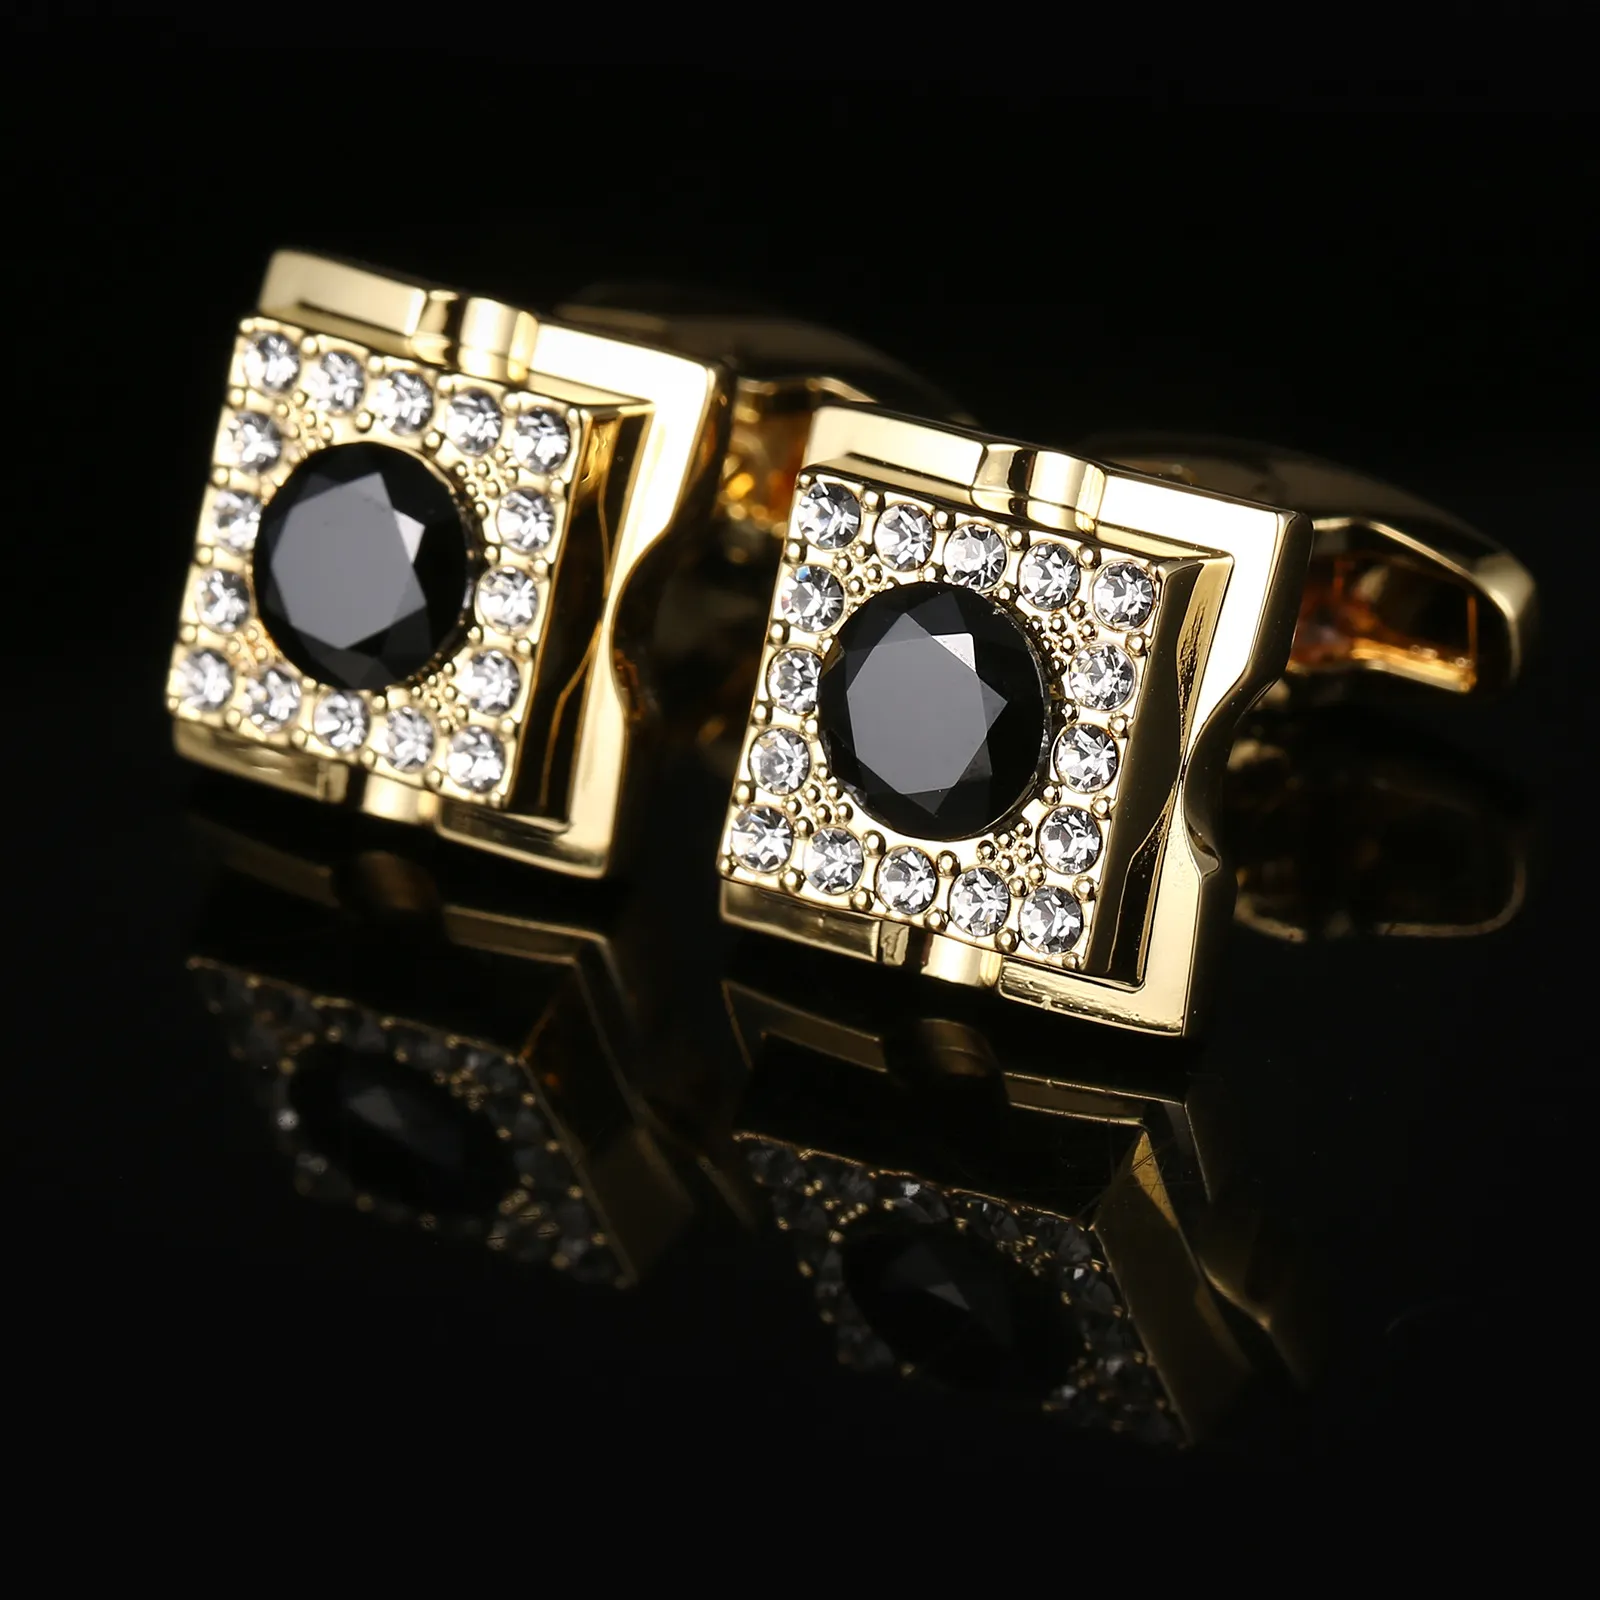 Kare Siyah Ve Beyaz Kristal Kol Düğmeleri Takı Gömlek Kol Düğmesi Erkek Marka Moda Manşet Bağlantı Düğün Damat Düğmesi Kol Düğmeleri AE581466380